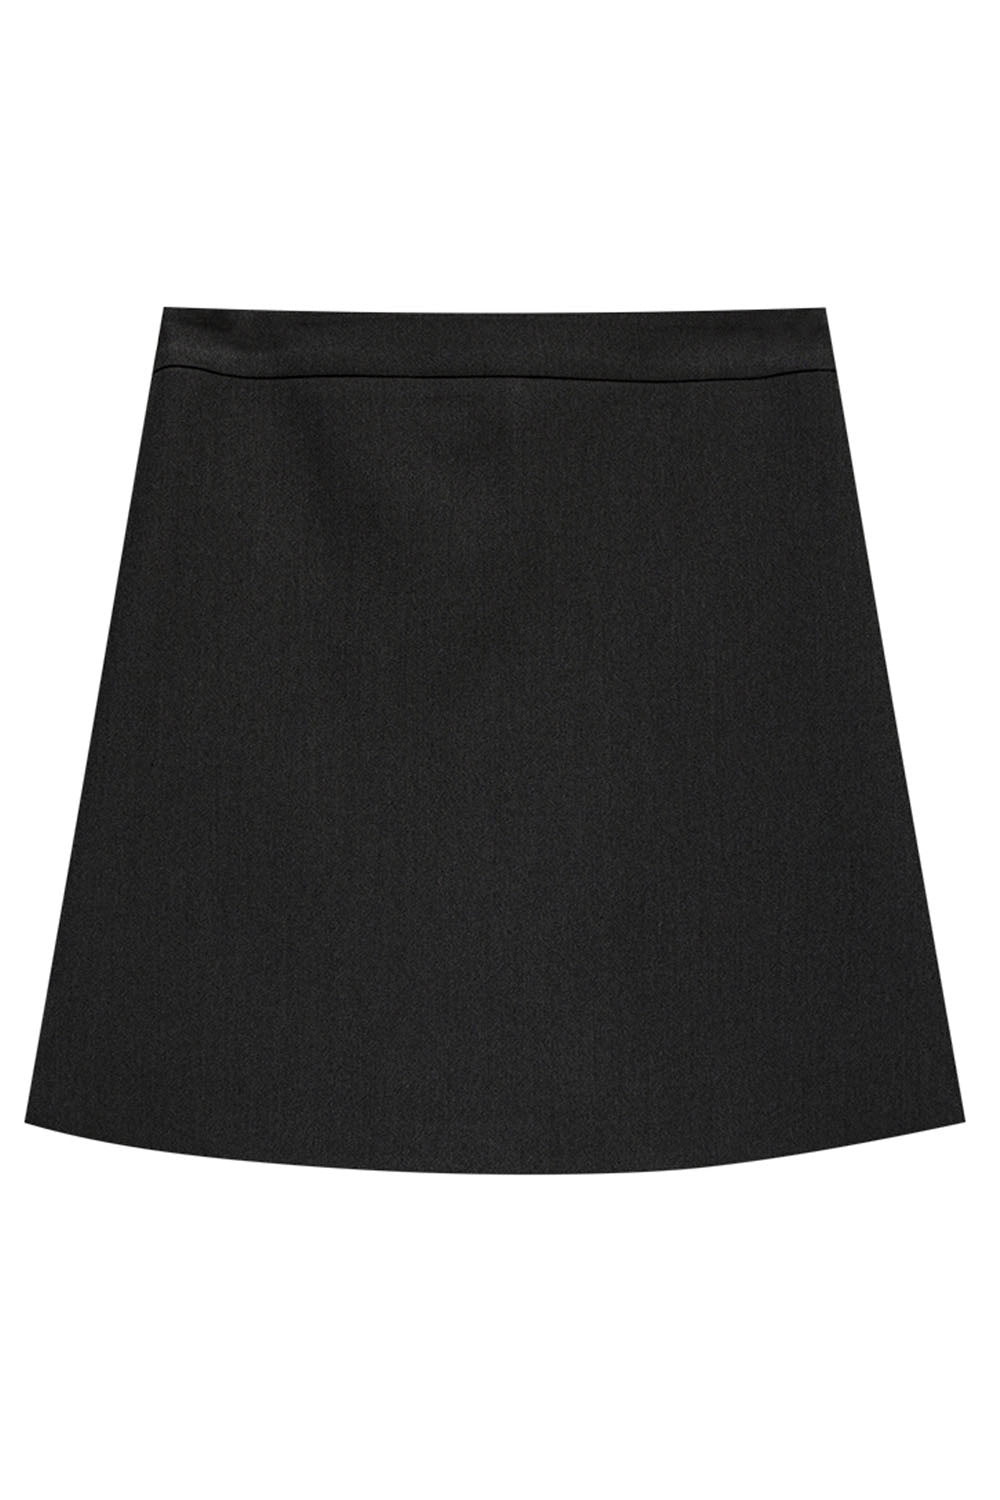 Skirt Mini Belah Sisi Anggun Wanita